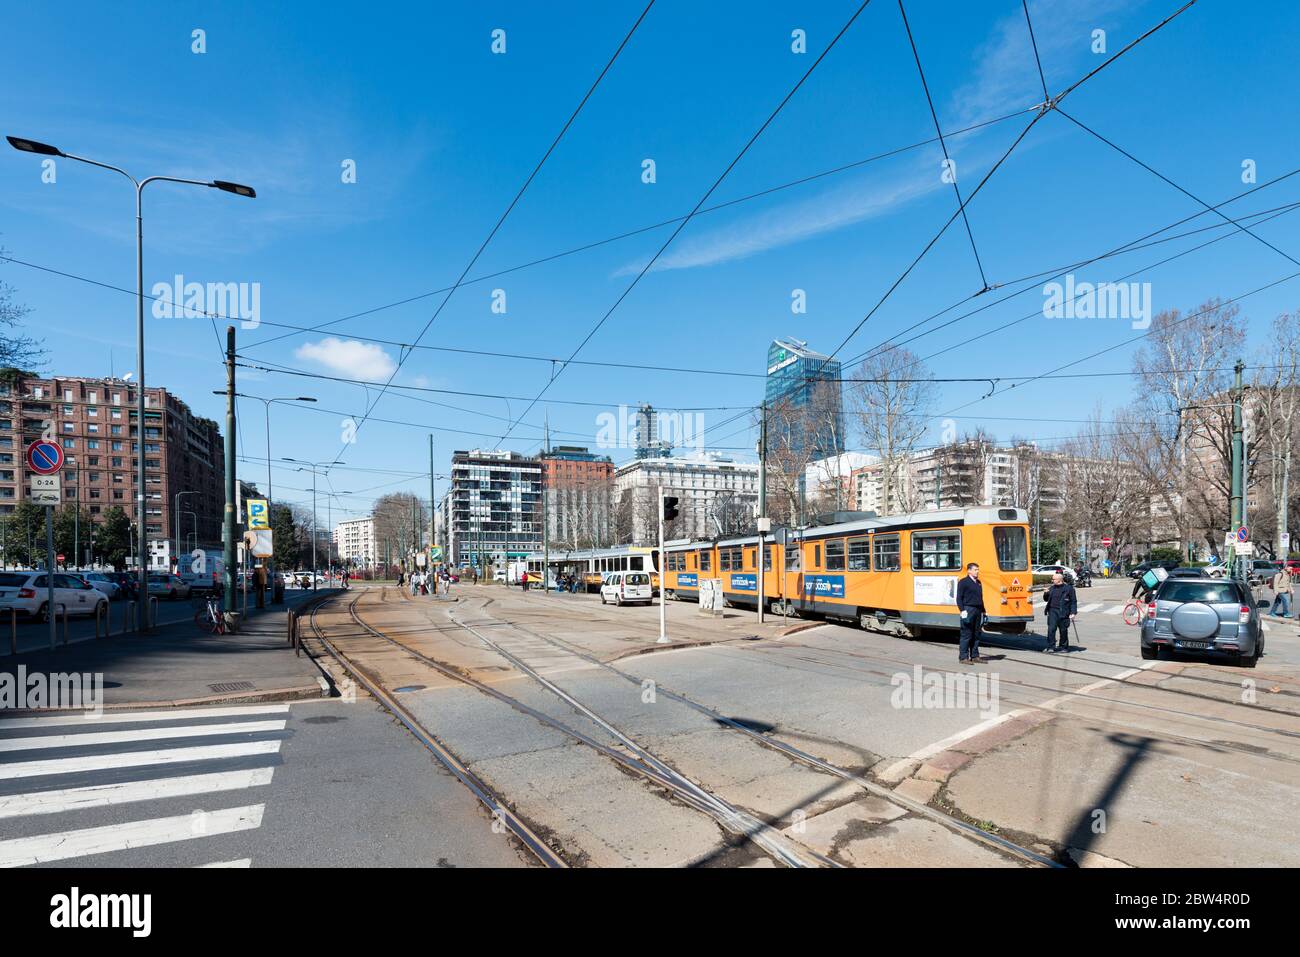 MILANO, ITALIA - 16 MARZO 2018: Immagine orizzontale della ferrovia del tram situata nel centro di Milano Foto Stock